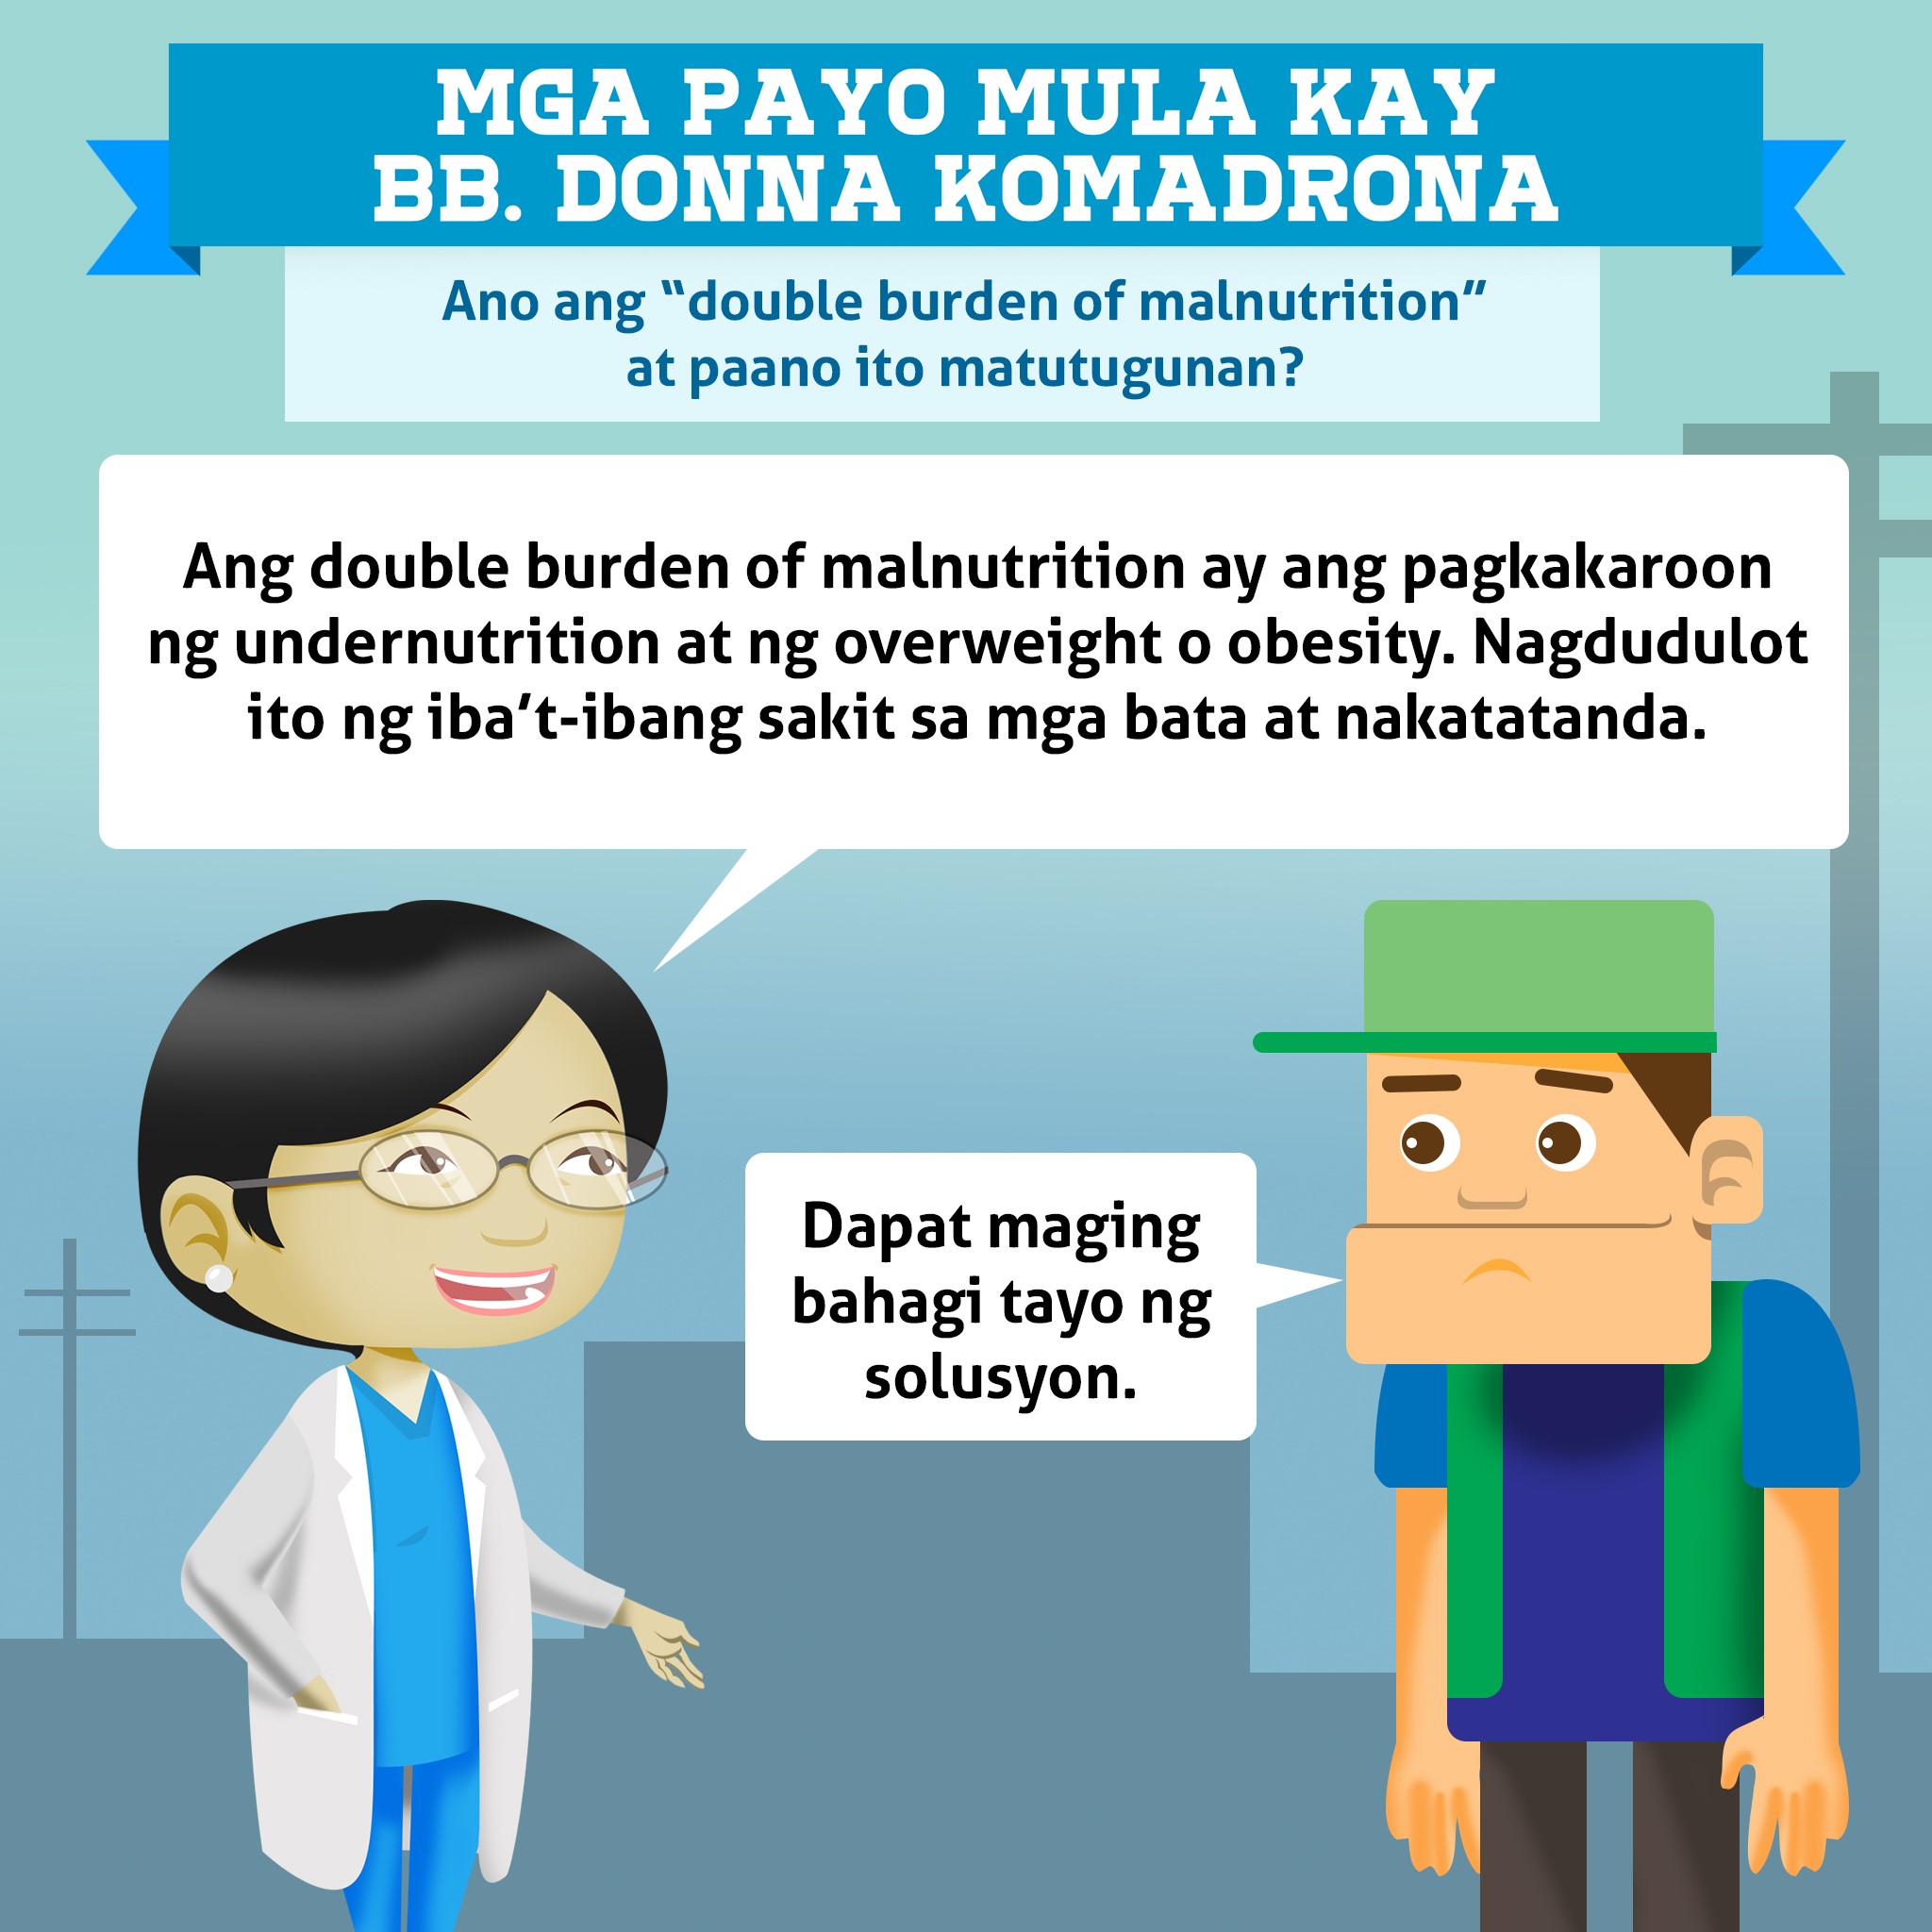 Ano ang "double burden of malnutrition" at paano ito matutugunan?